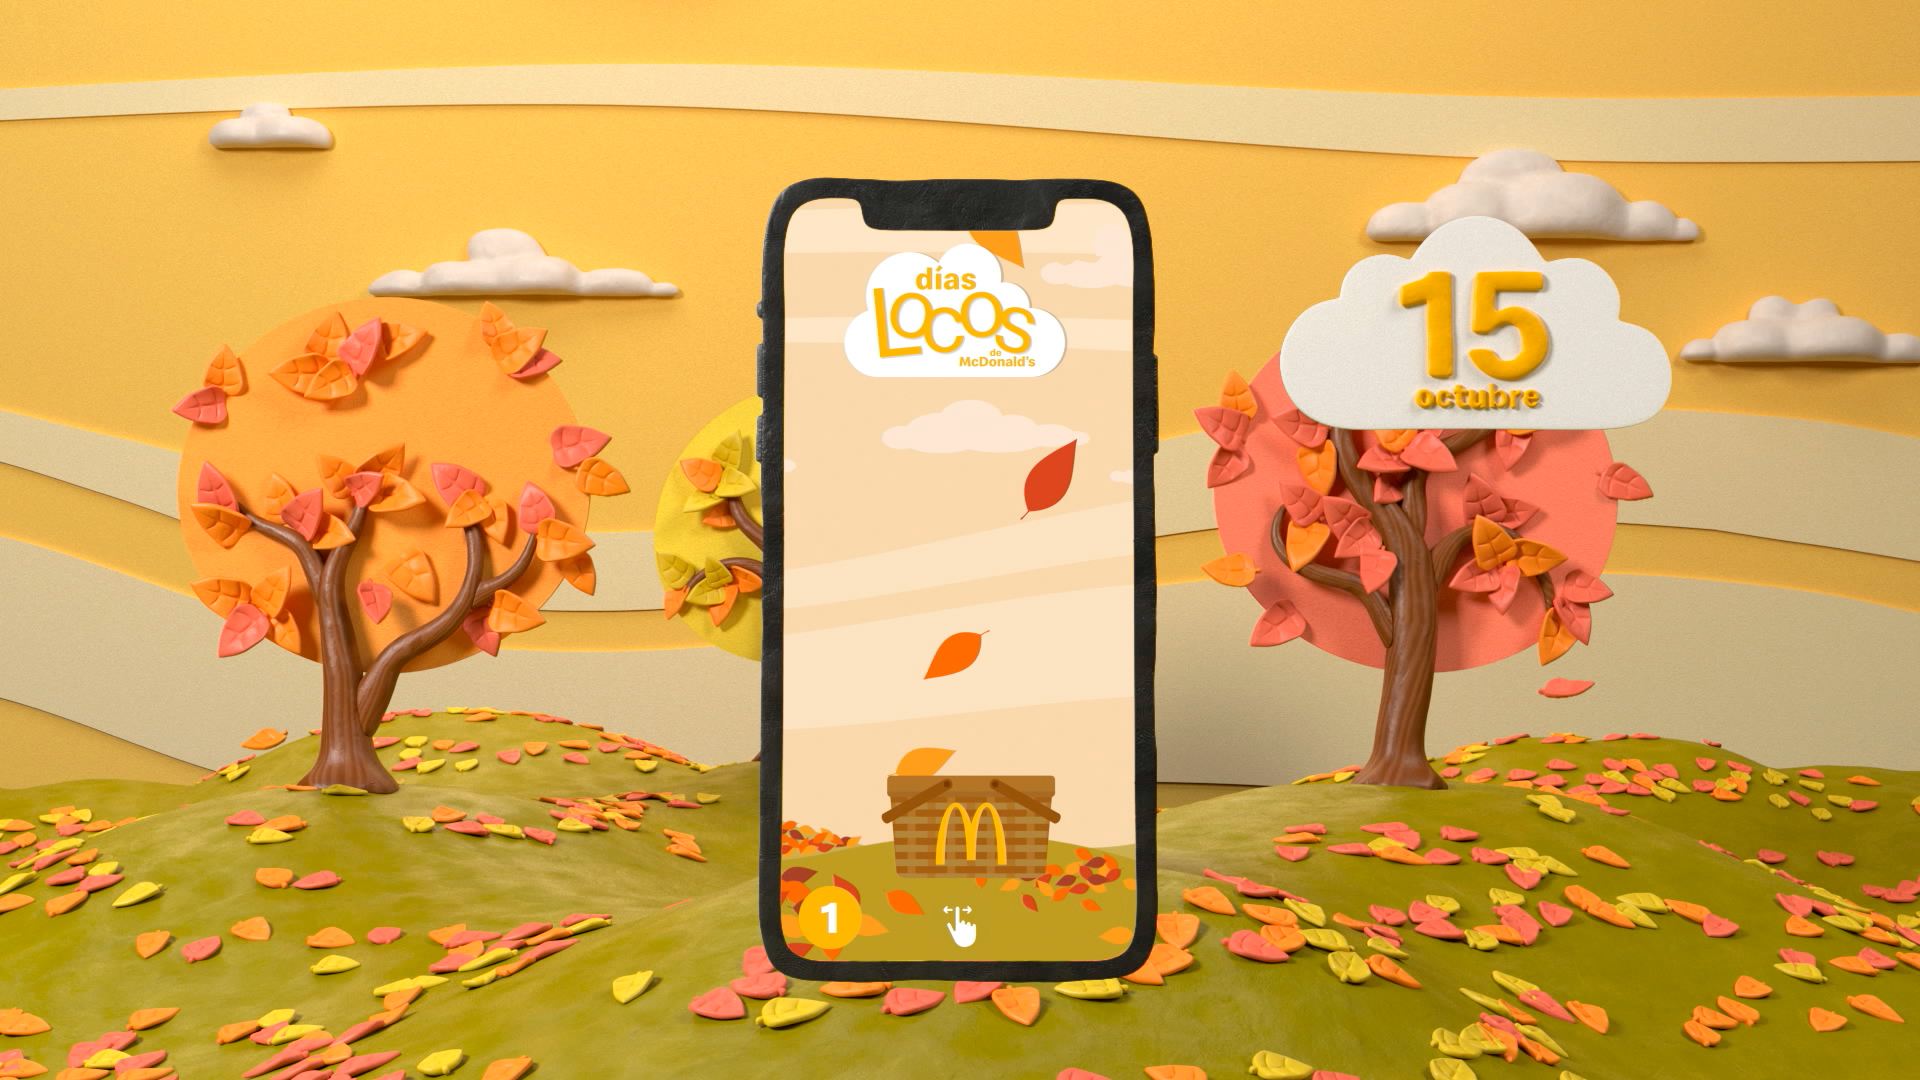 Campaña días locos de McDonalds en 3D imitano plastilina y estilo stop-motion